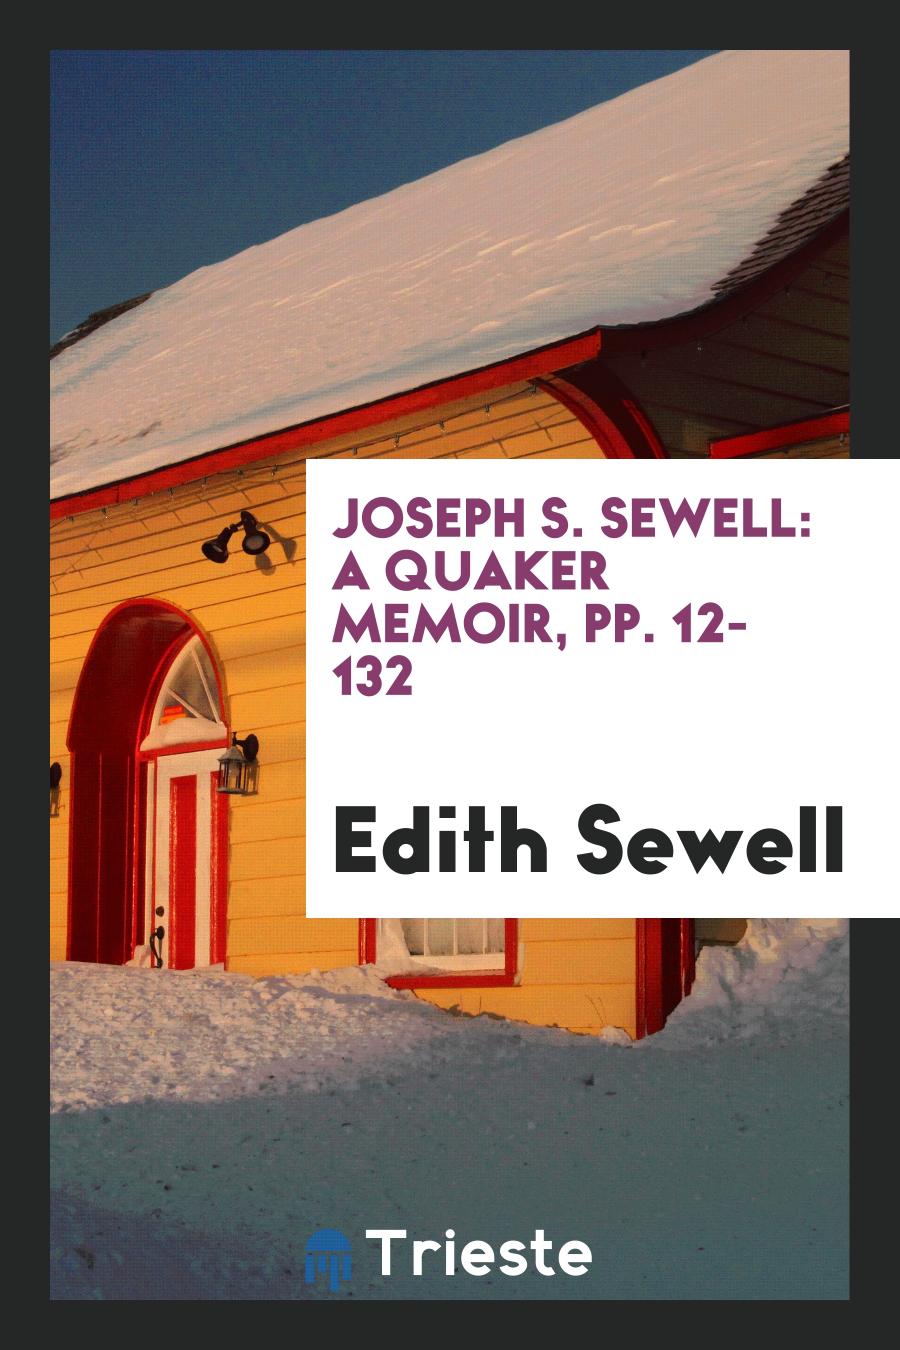 Joseph S. Sewell: A Quaker Memoir, pp. 12-132